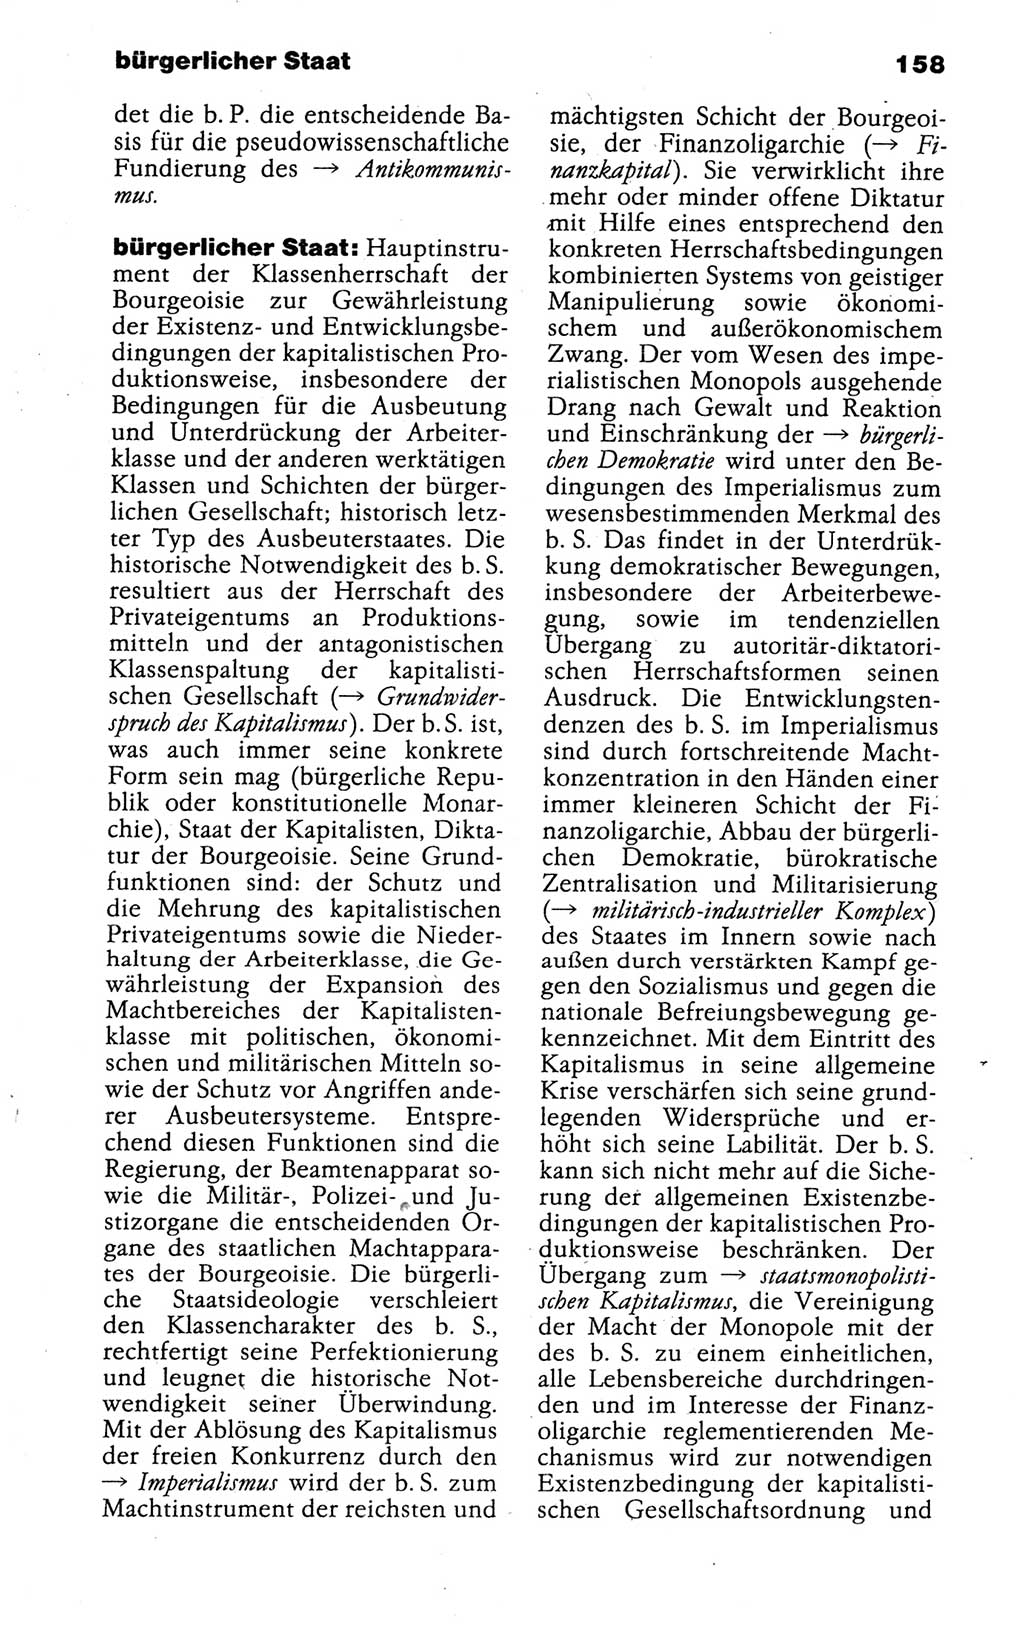 Kleines politisches Wörterbuch [Deutsche Demokratische Republik (DDR)] 1988, Seite 158 (Kl. pol. Wb. DDR 1988, S. 158)